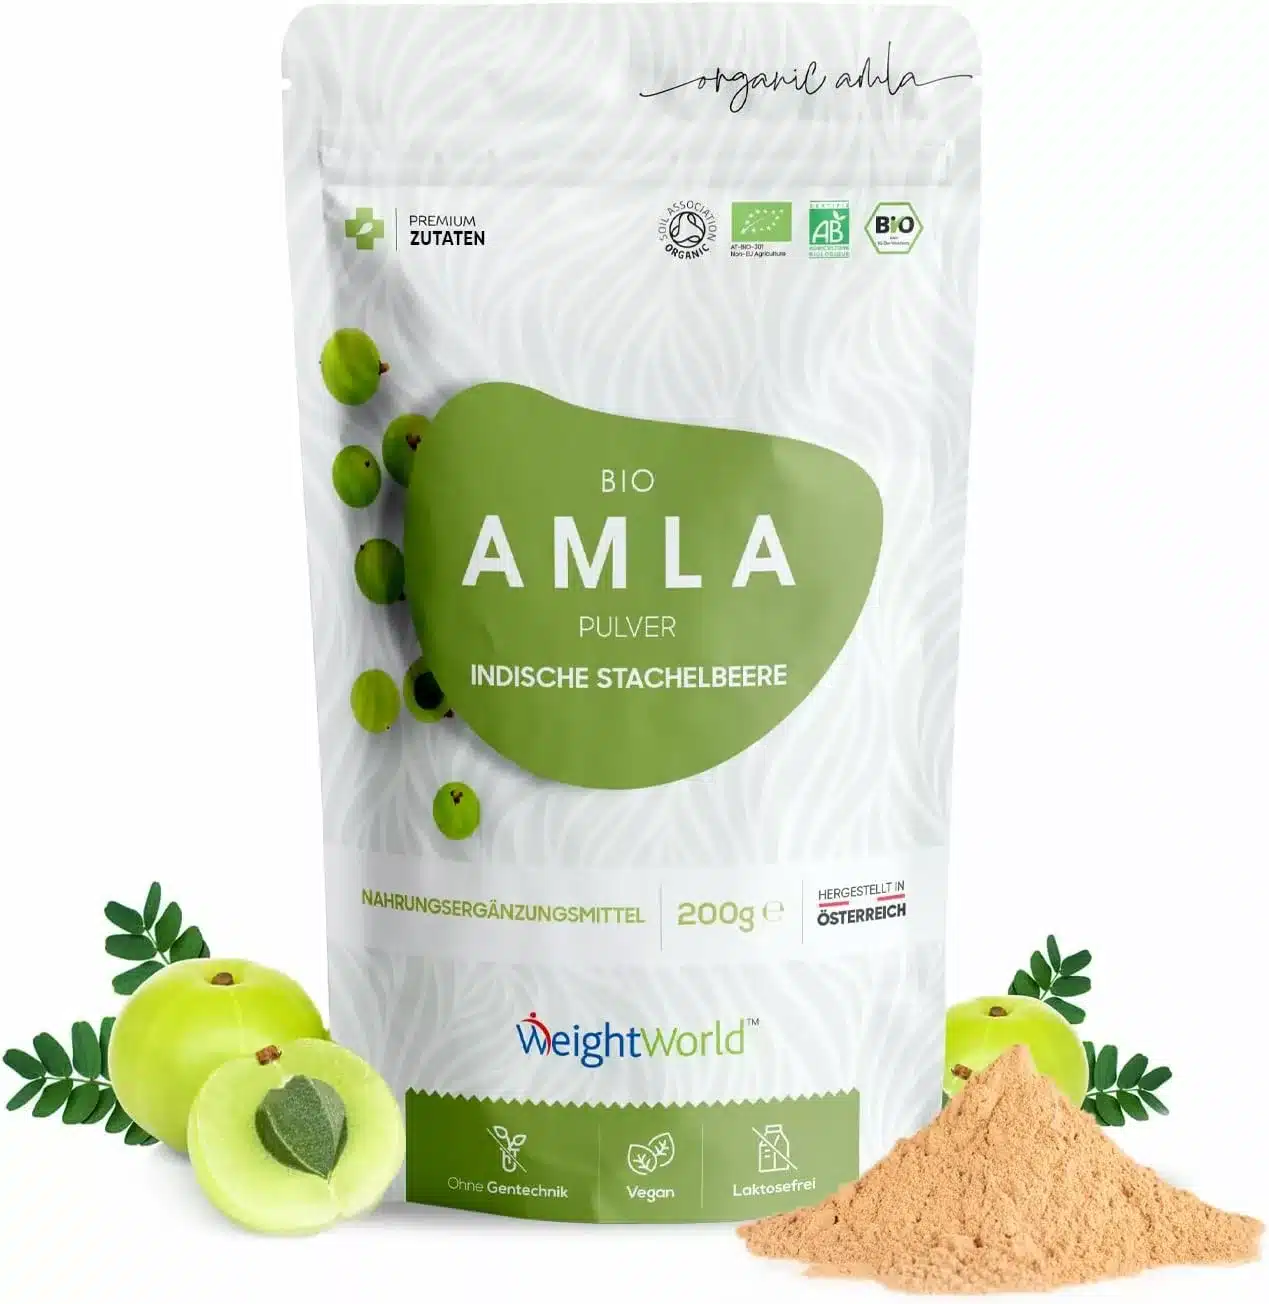 Bio Amla Pulver - Für gesunde Haut & Haare - Reich an Vitamin C & Antioxidantien - 200g Ayurveda Amla Pulver - Alternative zu Amla Öl - Amalaki - Hergestellt in Österreich - WeightWorld